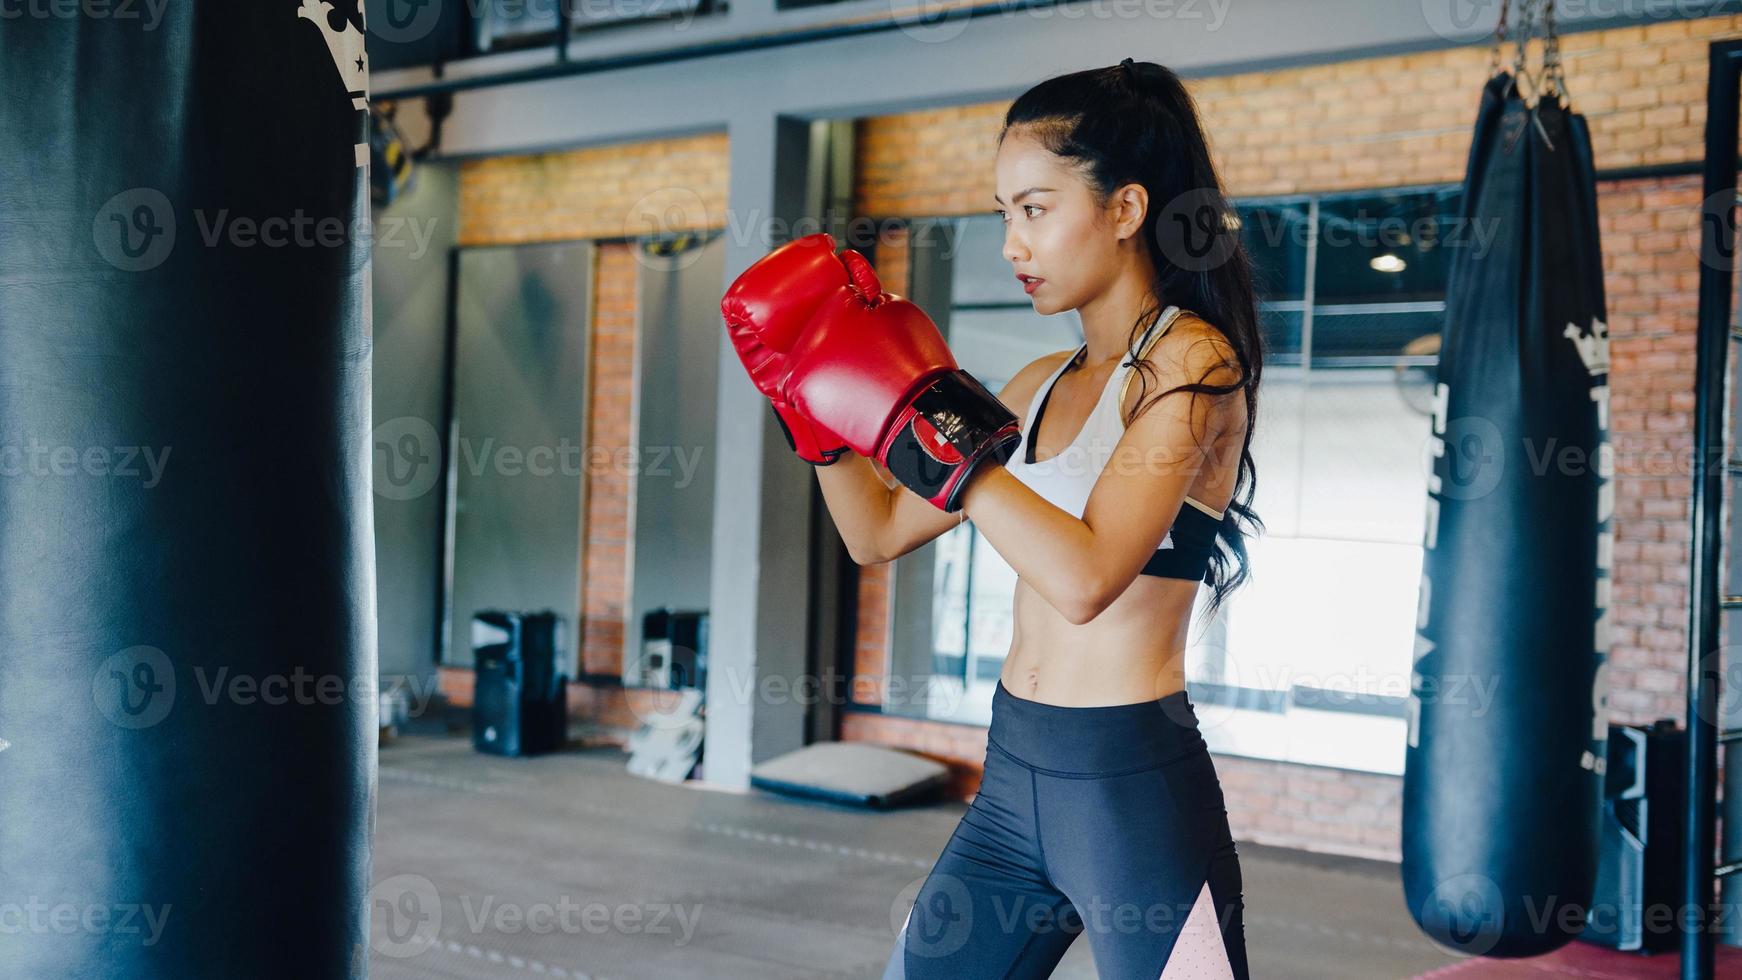 ung asiatisk dam kickboxning träning träning boxningssäck tuff kvinnlig fighter tränar boxning i gym fitness klass. idrottskvinna fritidsaktivitet, funktionell träning, hälsosam livsstilskoncept. foto